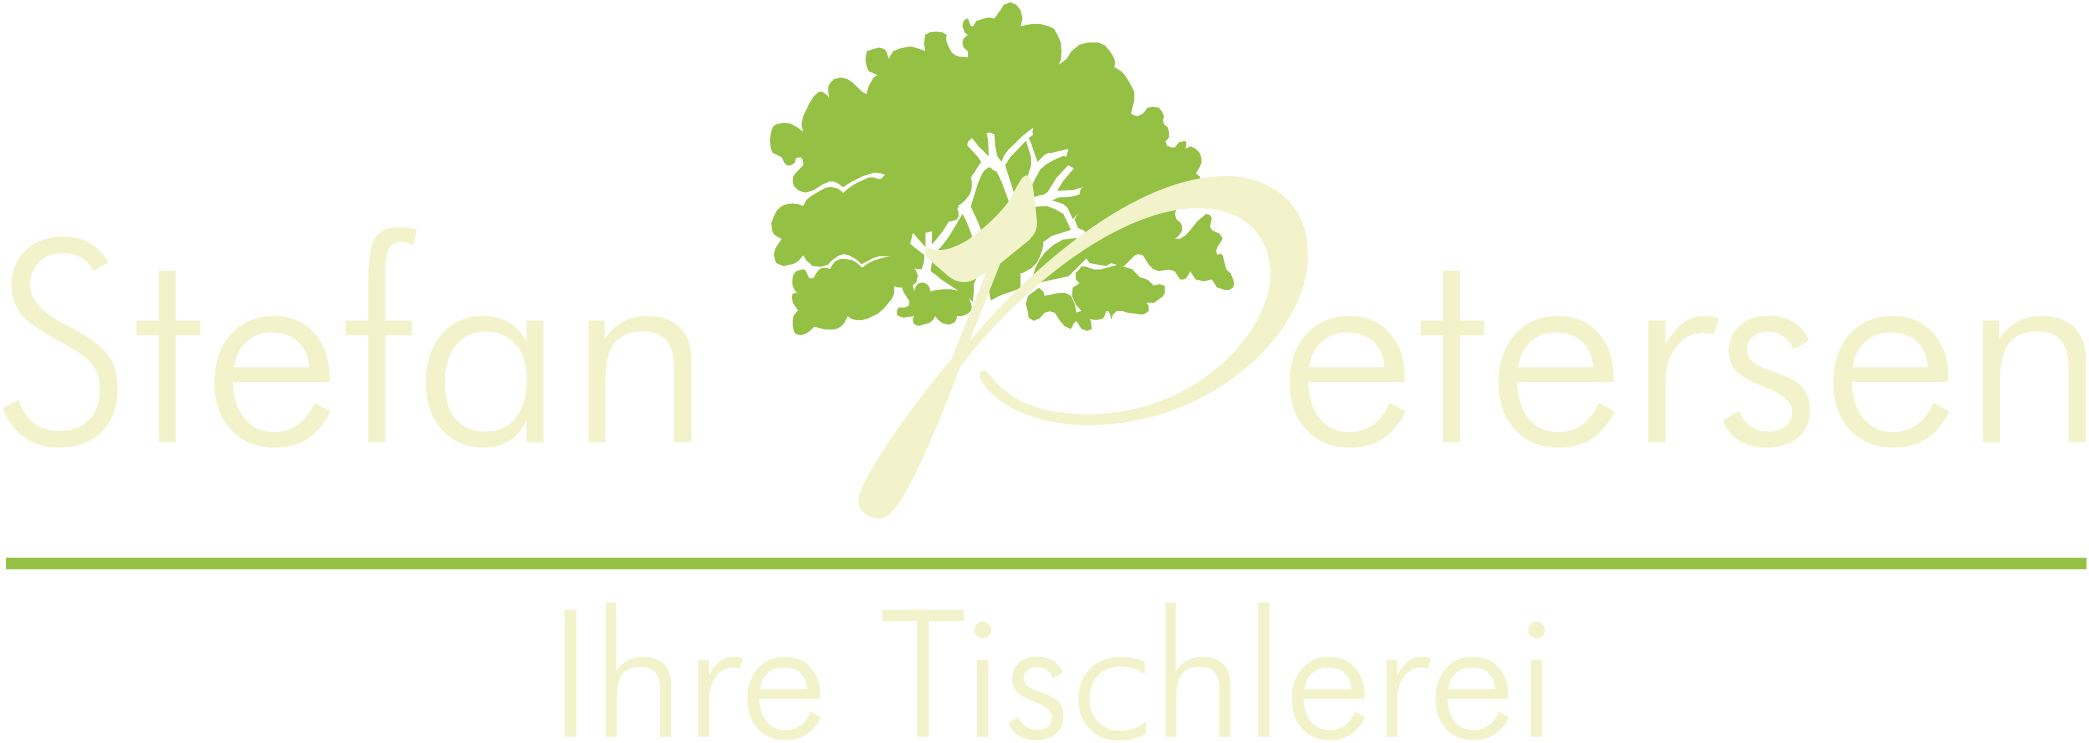 Logo Tischlerei Stefan Petersen